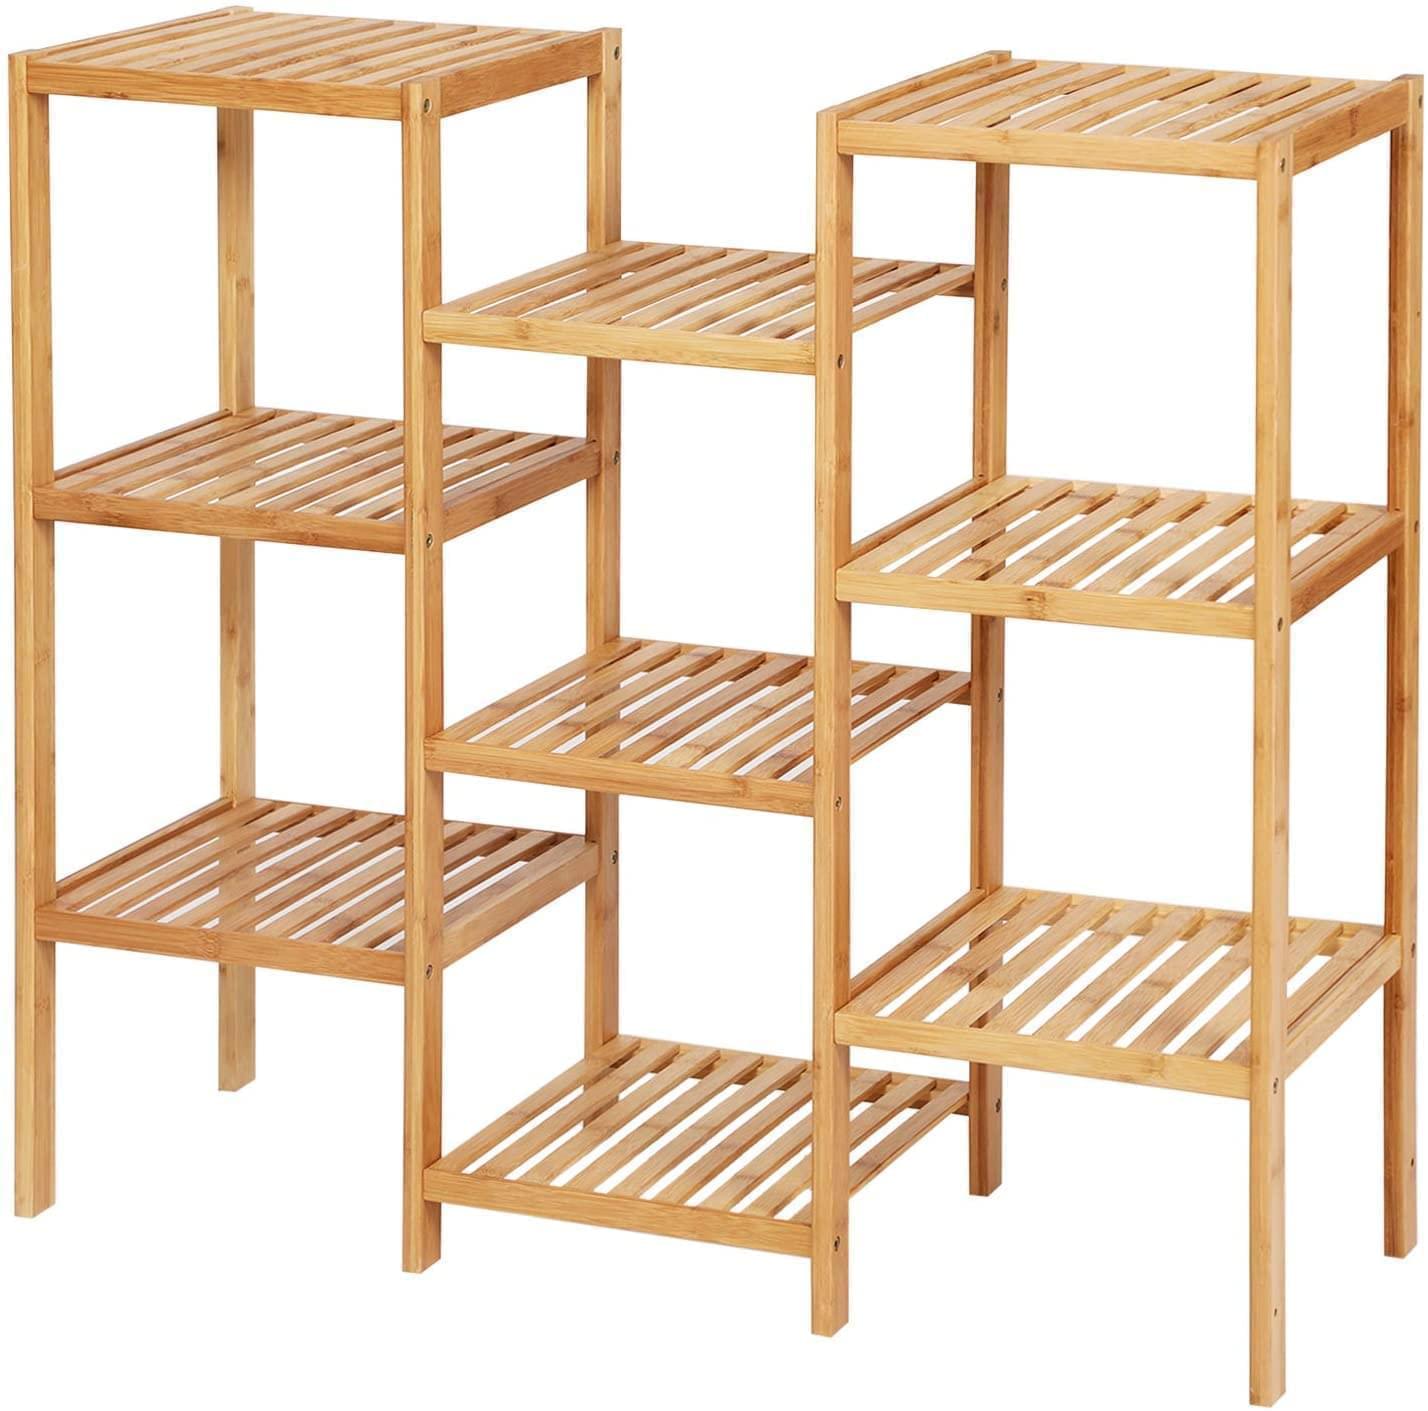 3 in 1 Multifunctional Bamboo Wood Outdoor Indoor Display Shelf Rack Unit Organiser